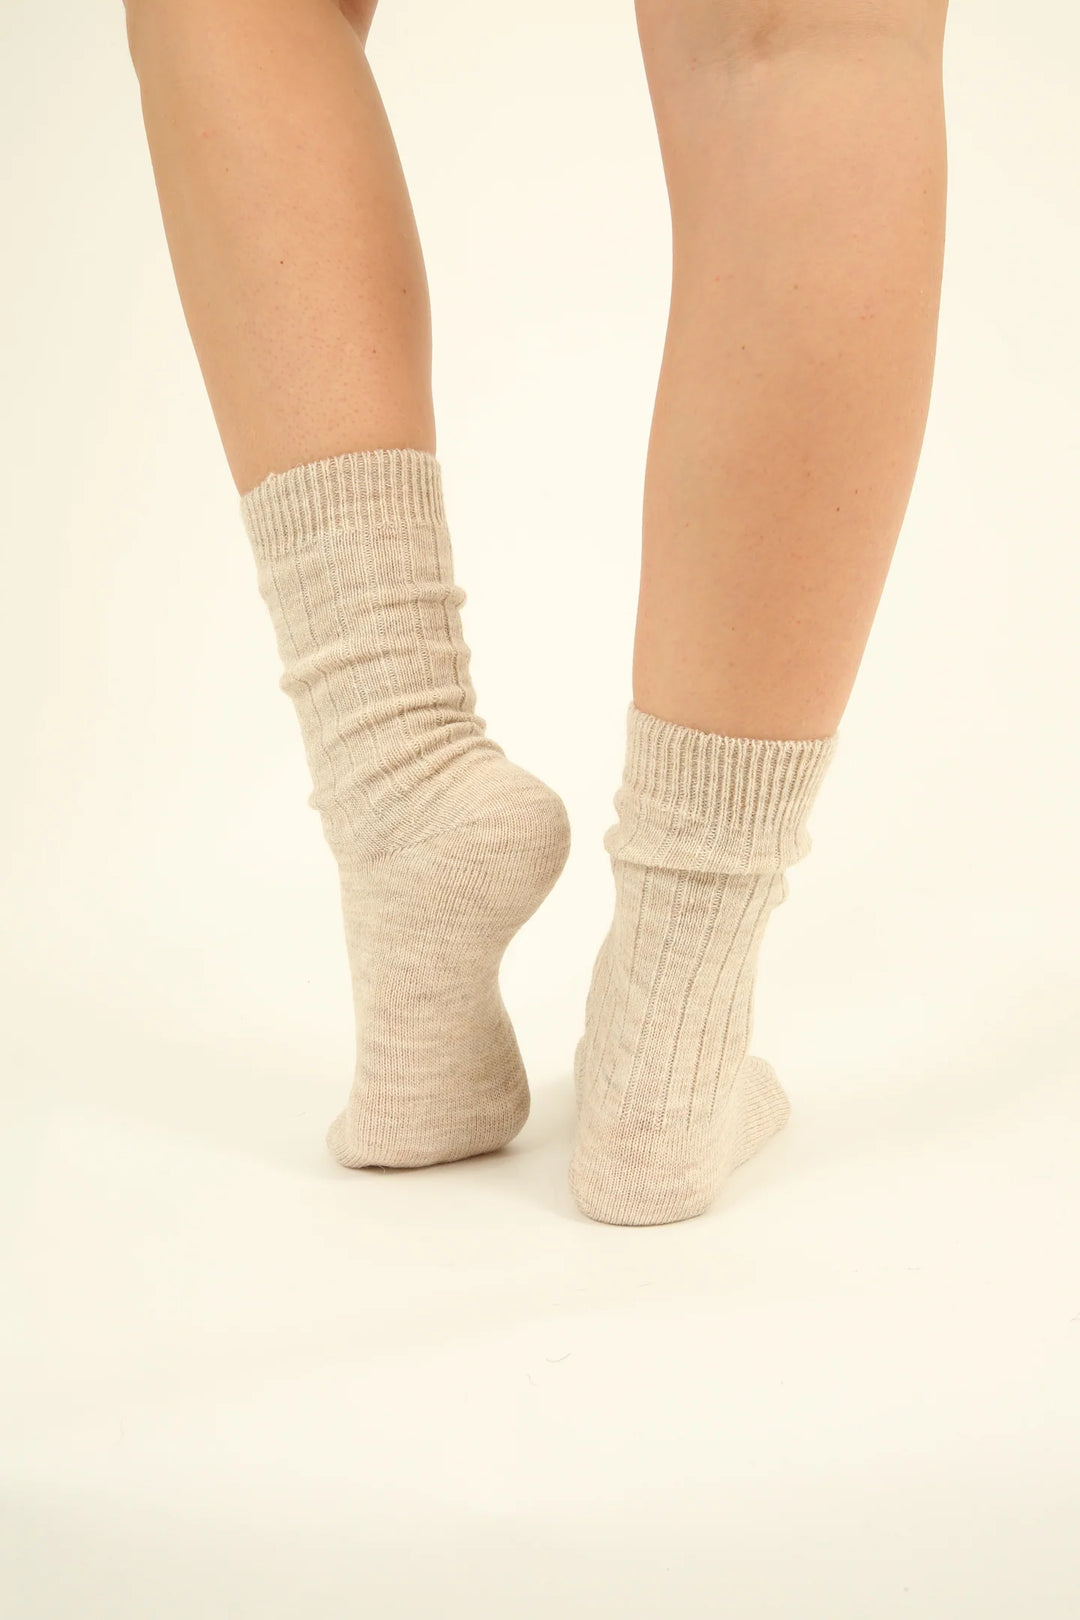 100% Wool Socks - Alpaca and Sheep Wool - 4 pairs